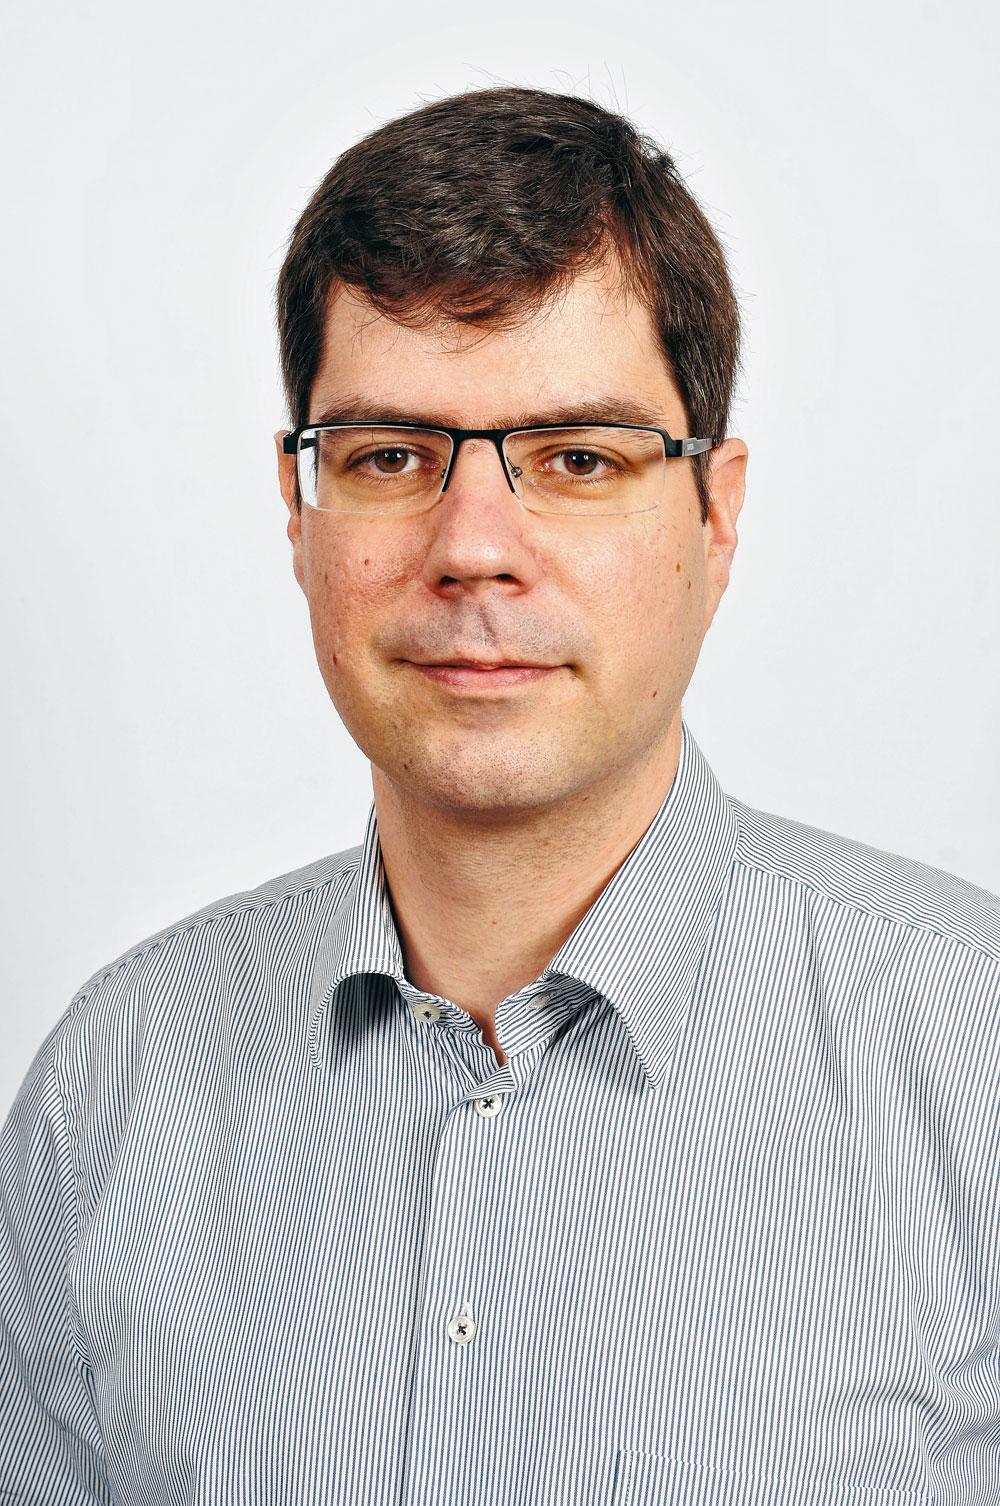 Stefan Hallez